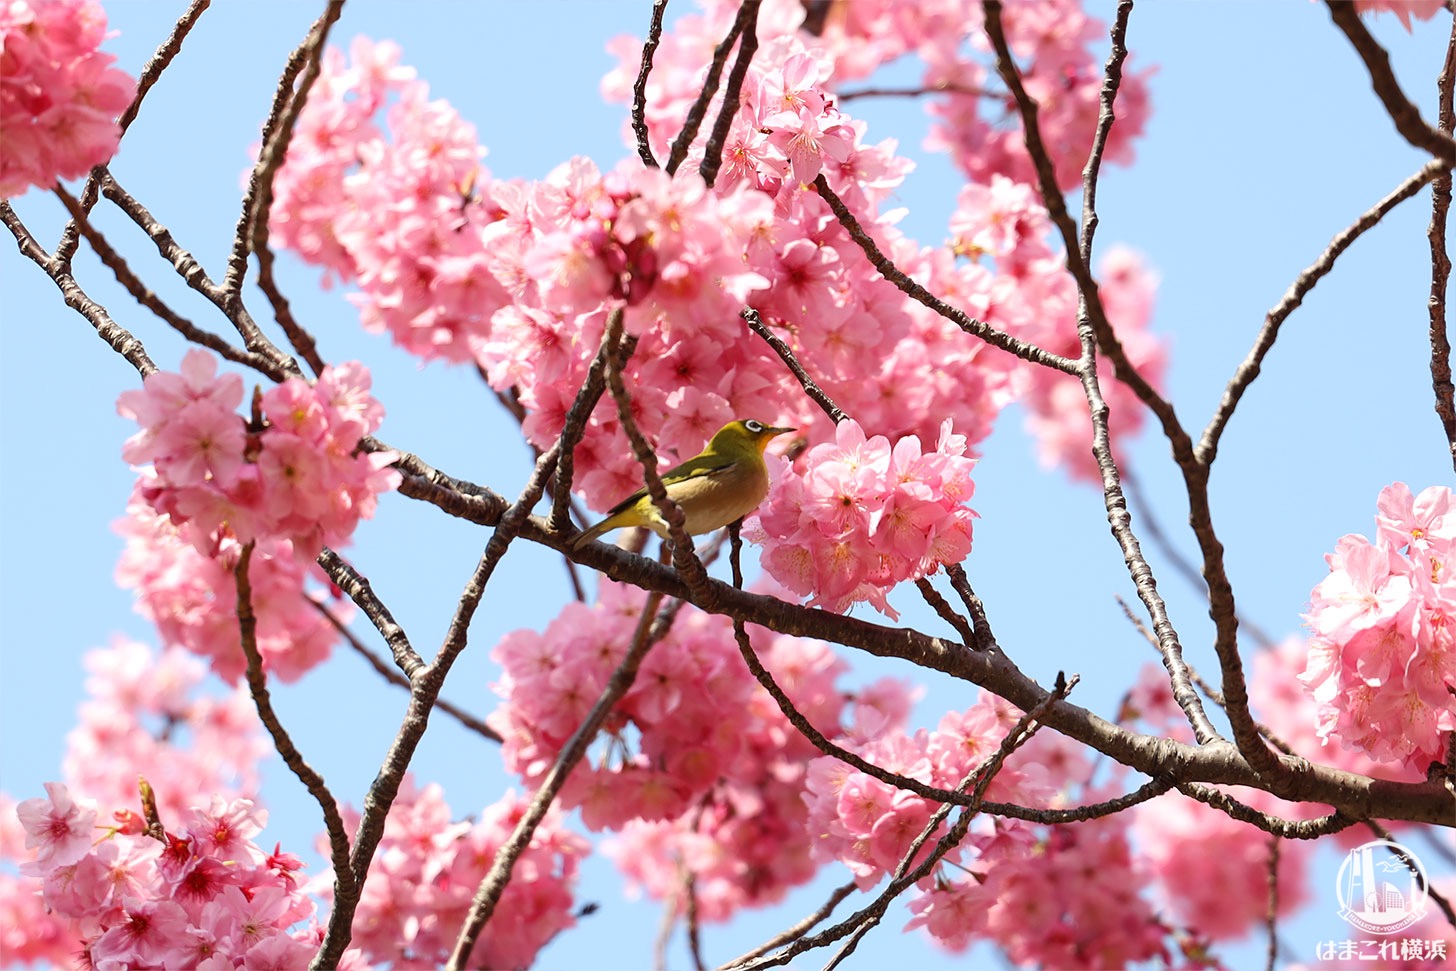 横浜公園で早咲きの横浜緋桜が満開 濃いピンクのボンボン桜かわいい はまこれ横浜